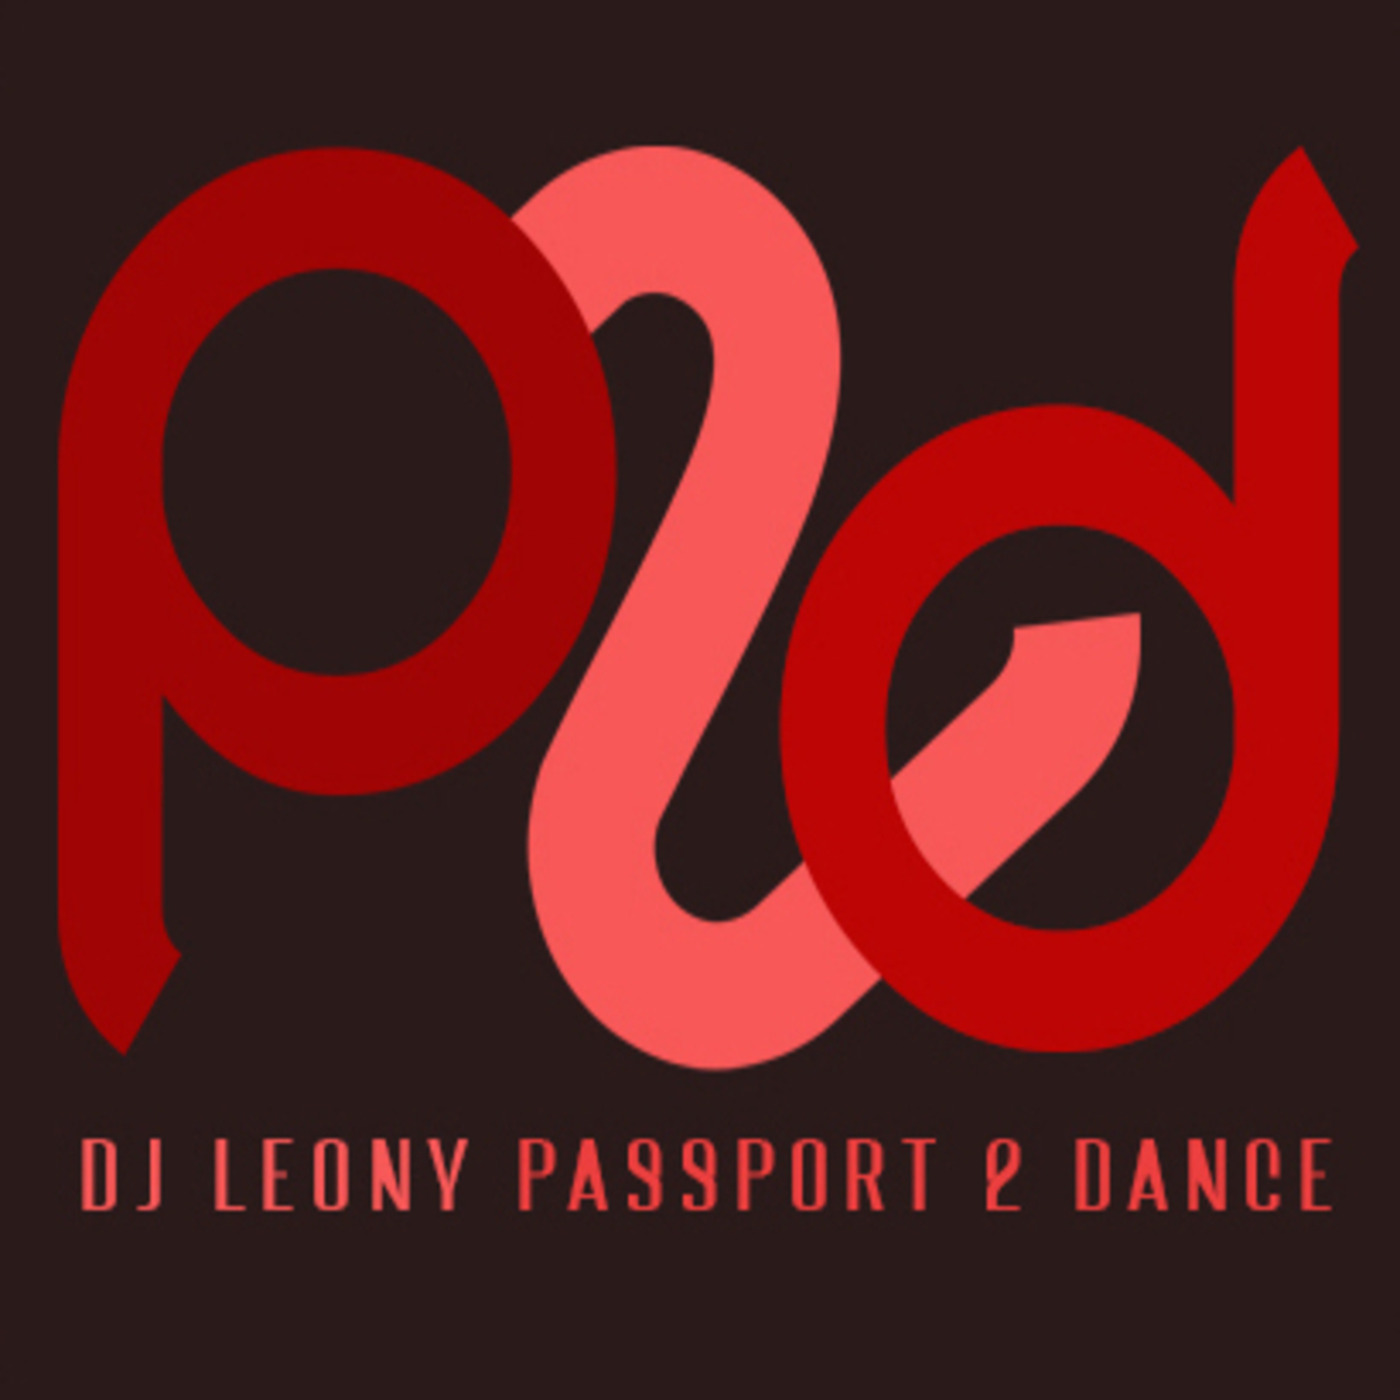 Episode 32767: djleony pres. Passport 2 Dance 062722 by djleony